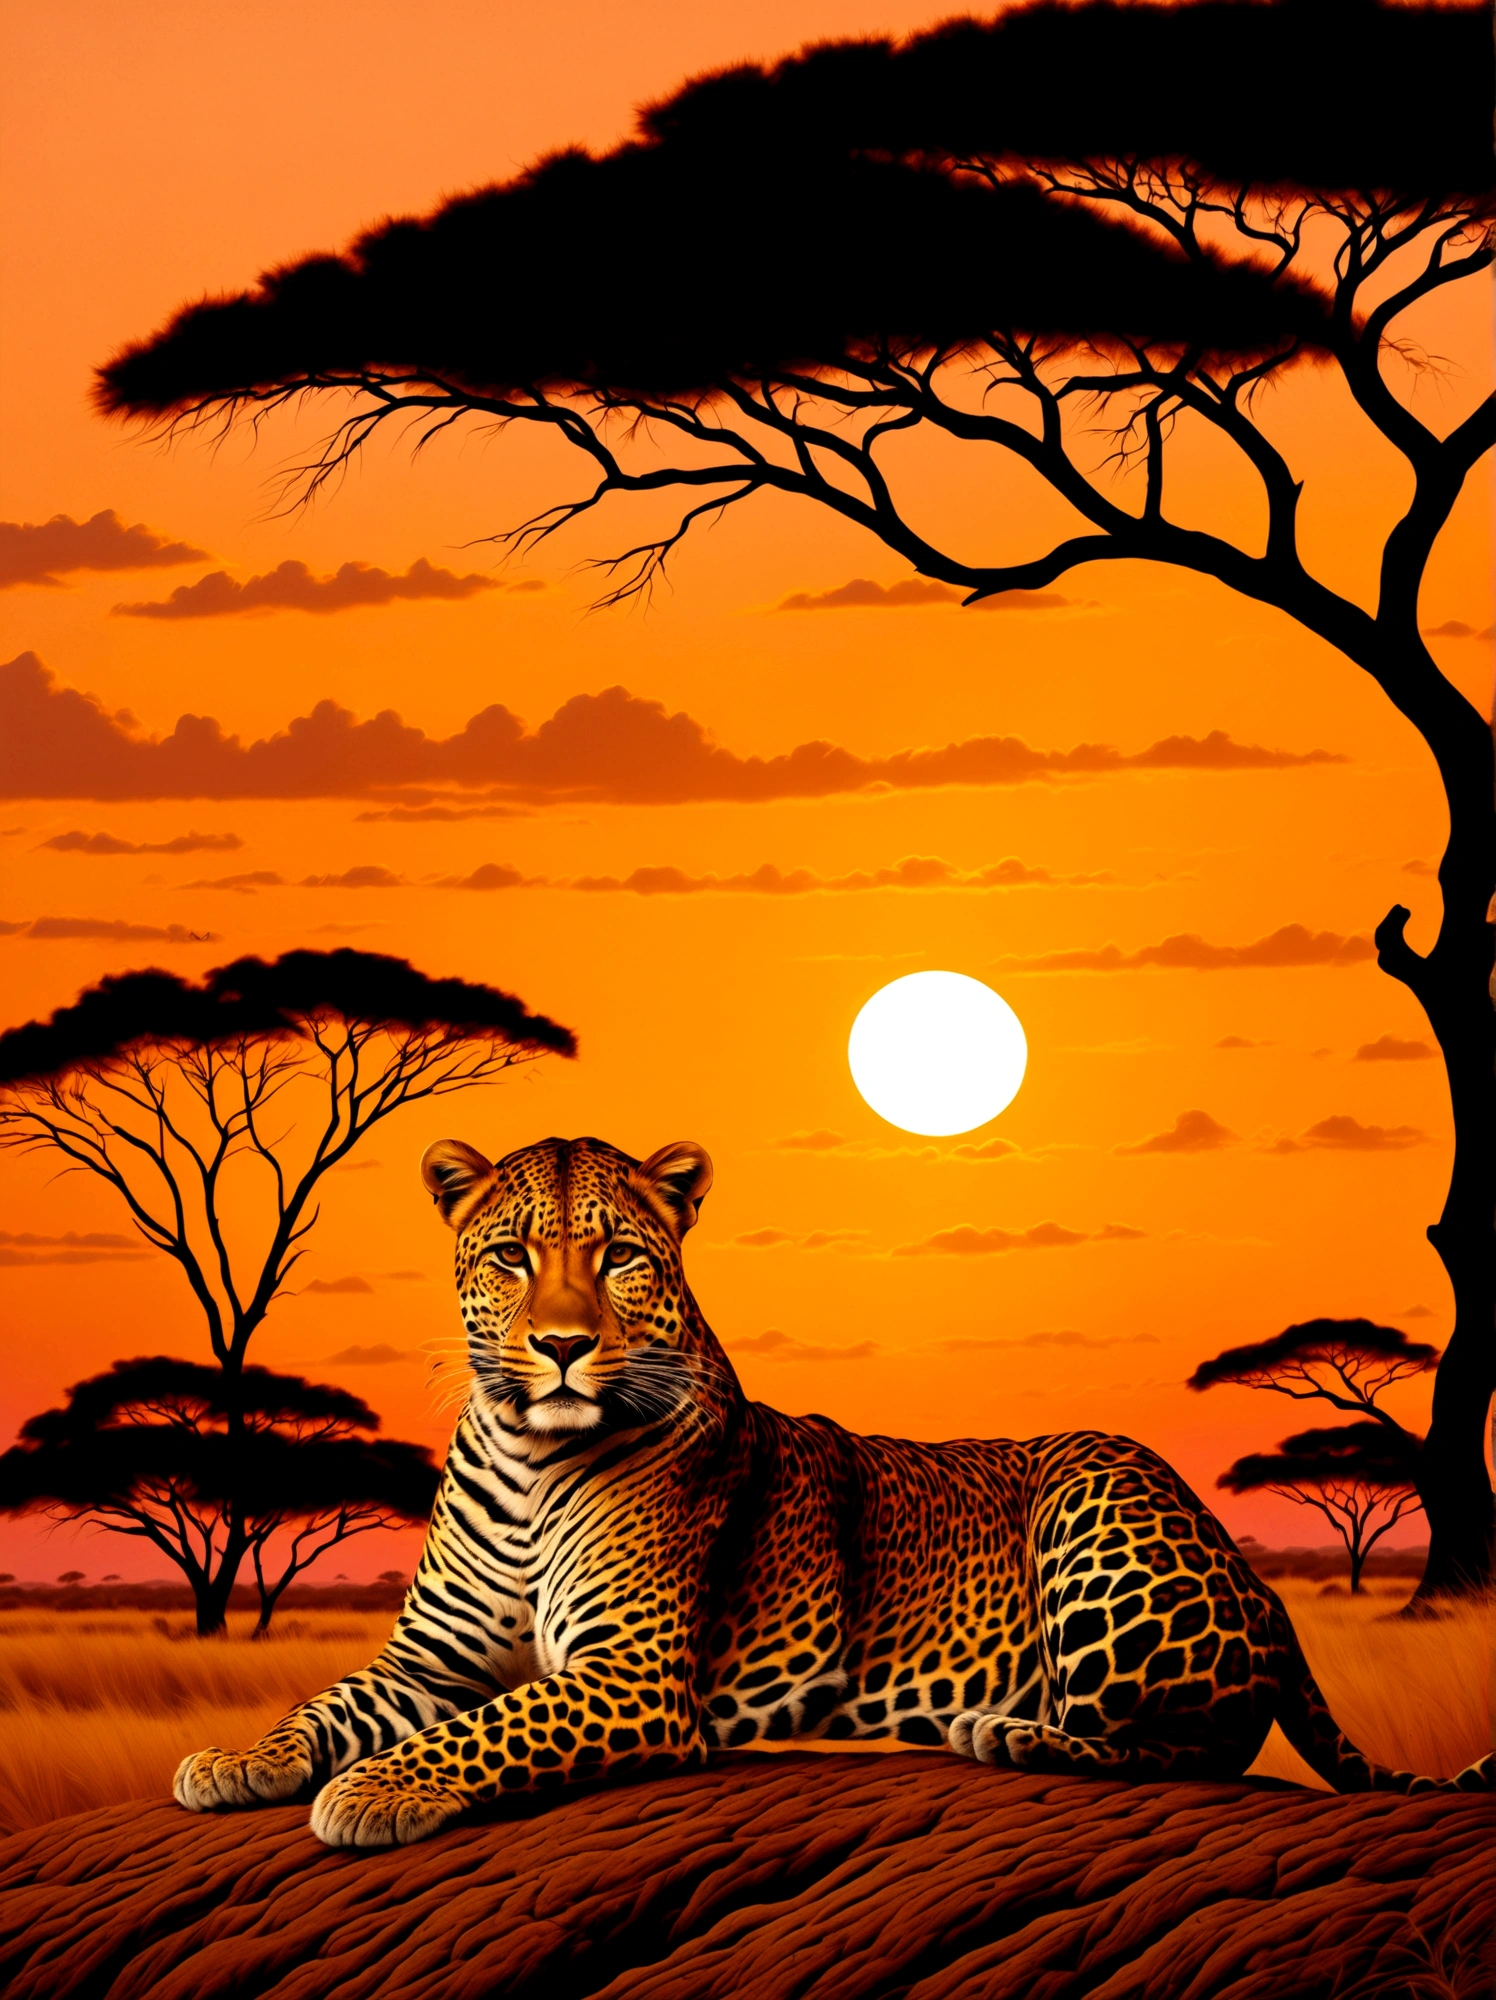 Um leopardo com uma coroa dourada apoiada na cabeça, majestosamente posicionado contra o pano de fundo de um pôr do sol na savana. A coroa brilha levemente sob a luz solar fraca enquanto a criatura observa seus arredores. Tons quentes de laranja e rosa do sol poente cobrem a cena, destacando a vibrante pelagem do leopardo. Silhuetas de acácias podem ser vistas ao longe, pontilhando a vasta paisagem.